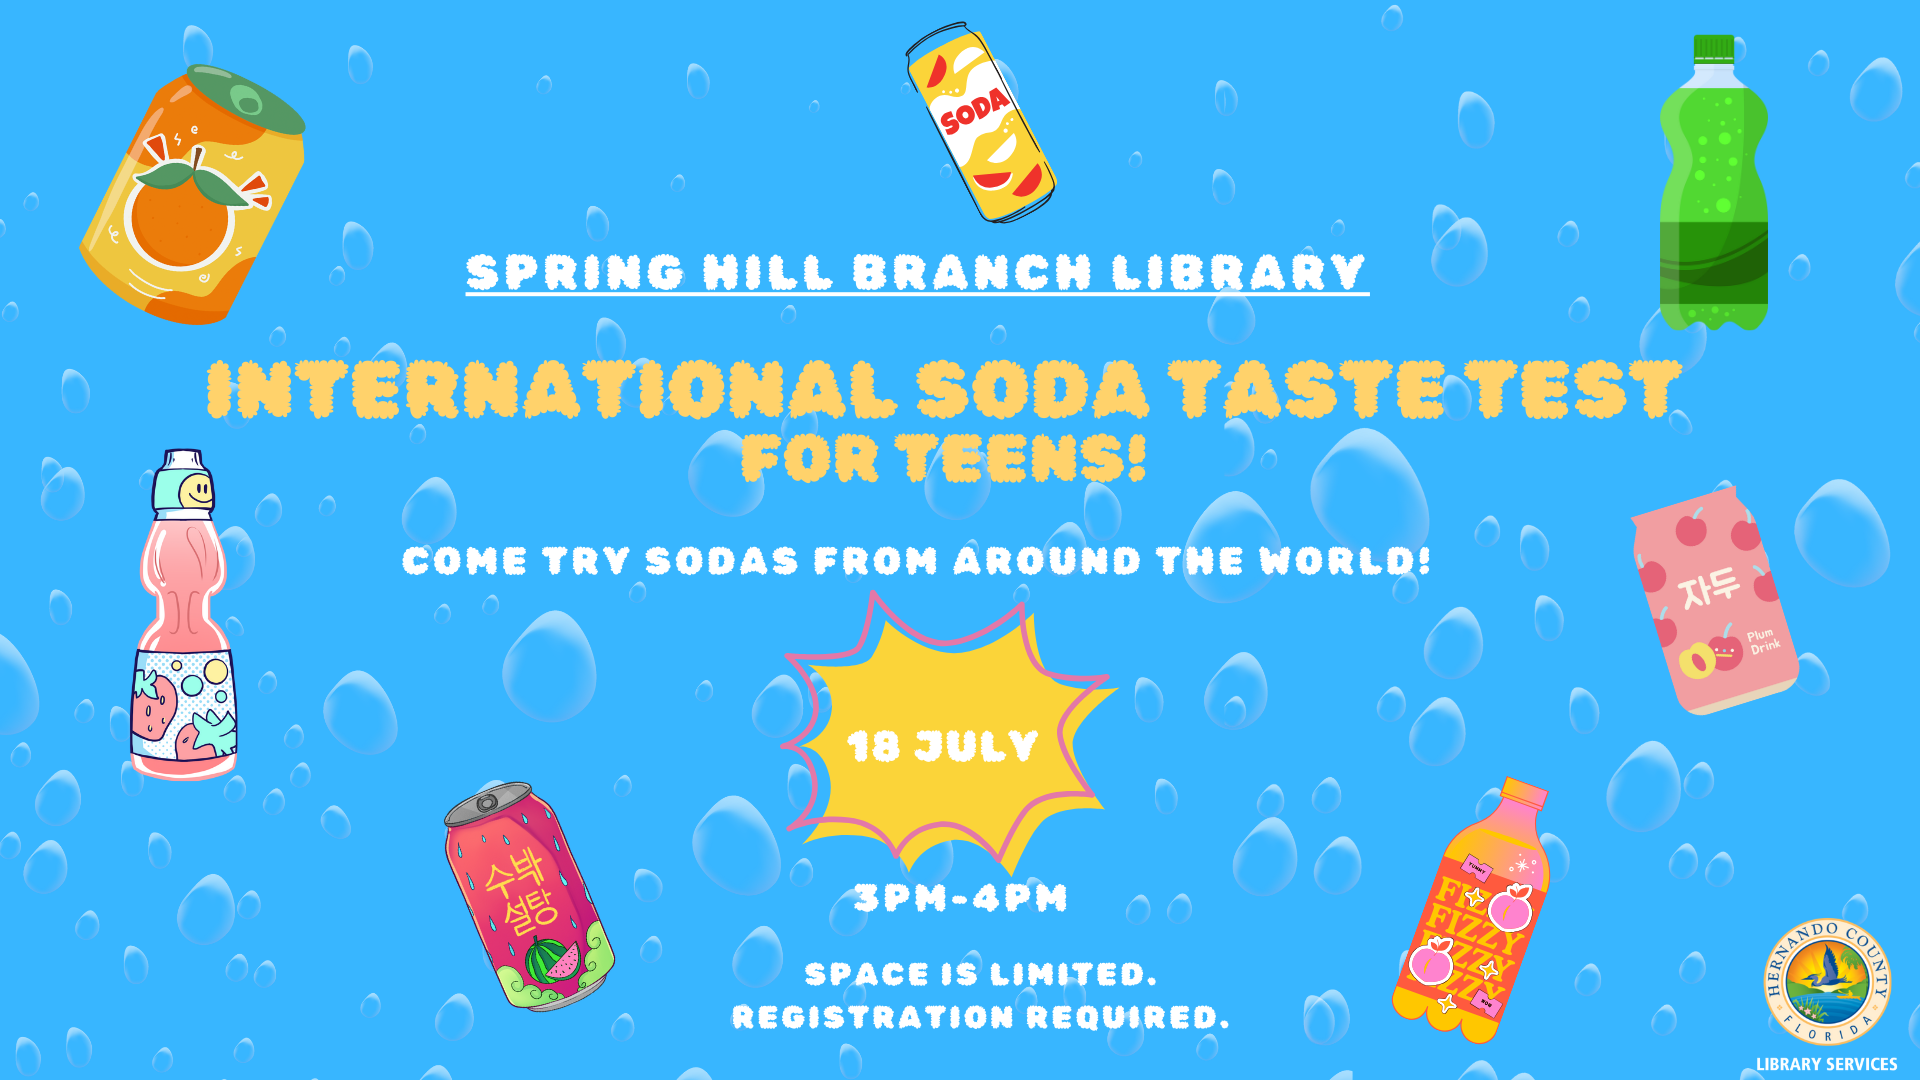 International Soda Taste Test for Teens